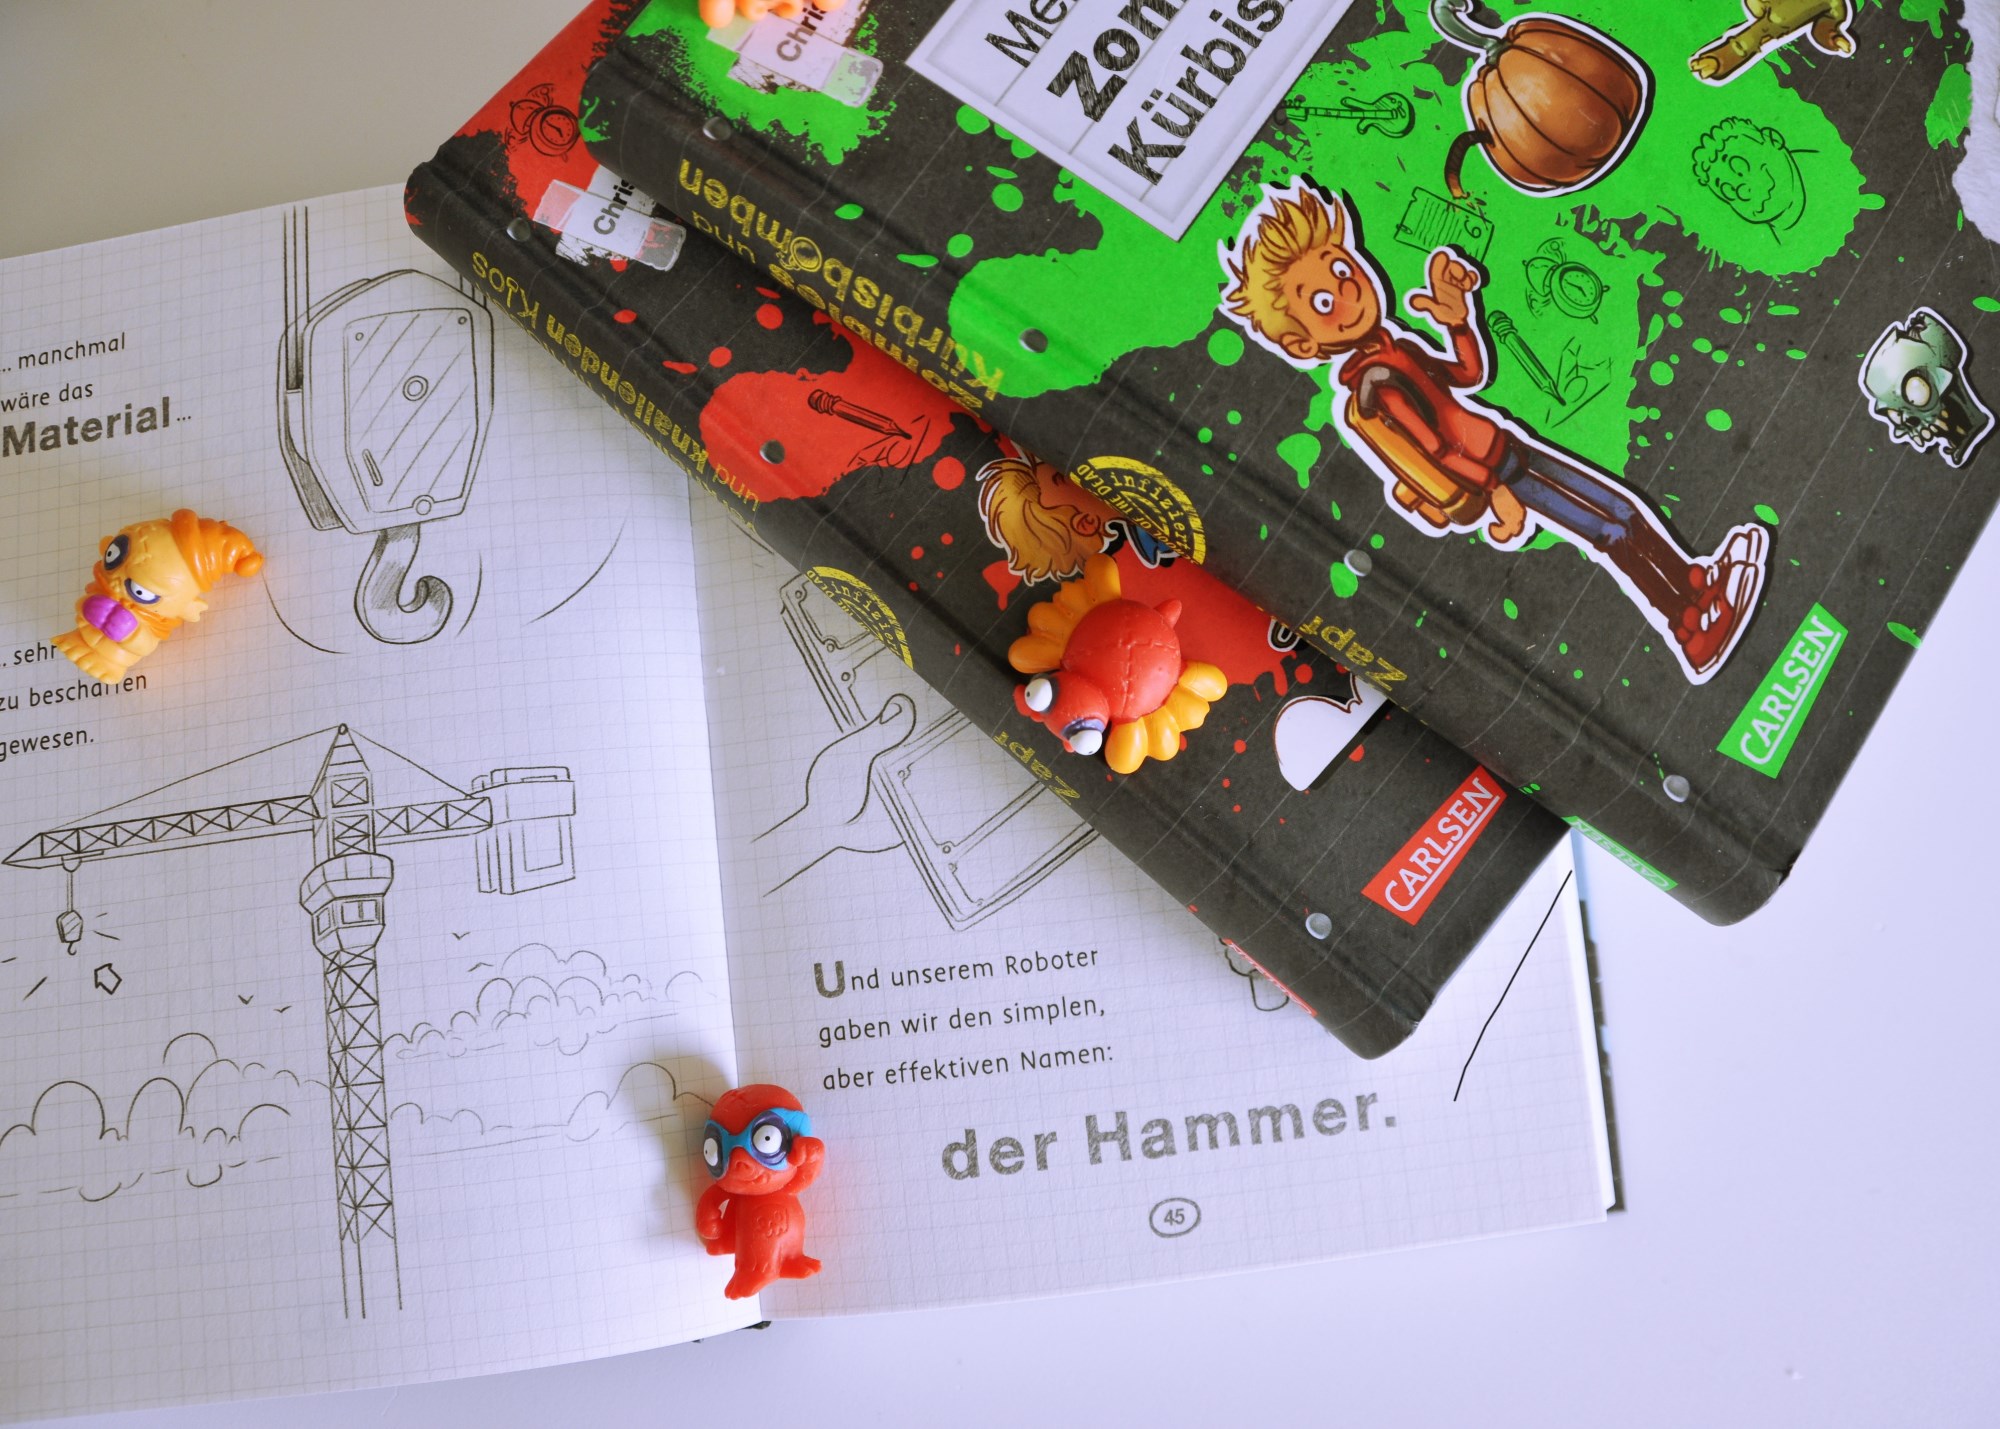 Was Max mit Schul-Zombies zu tun hat - Interview mit Kinderbuchautor Christian Tielmann #autor #kinderbuch #vorlsen #interview #buch #jungs #schule